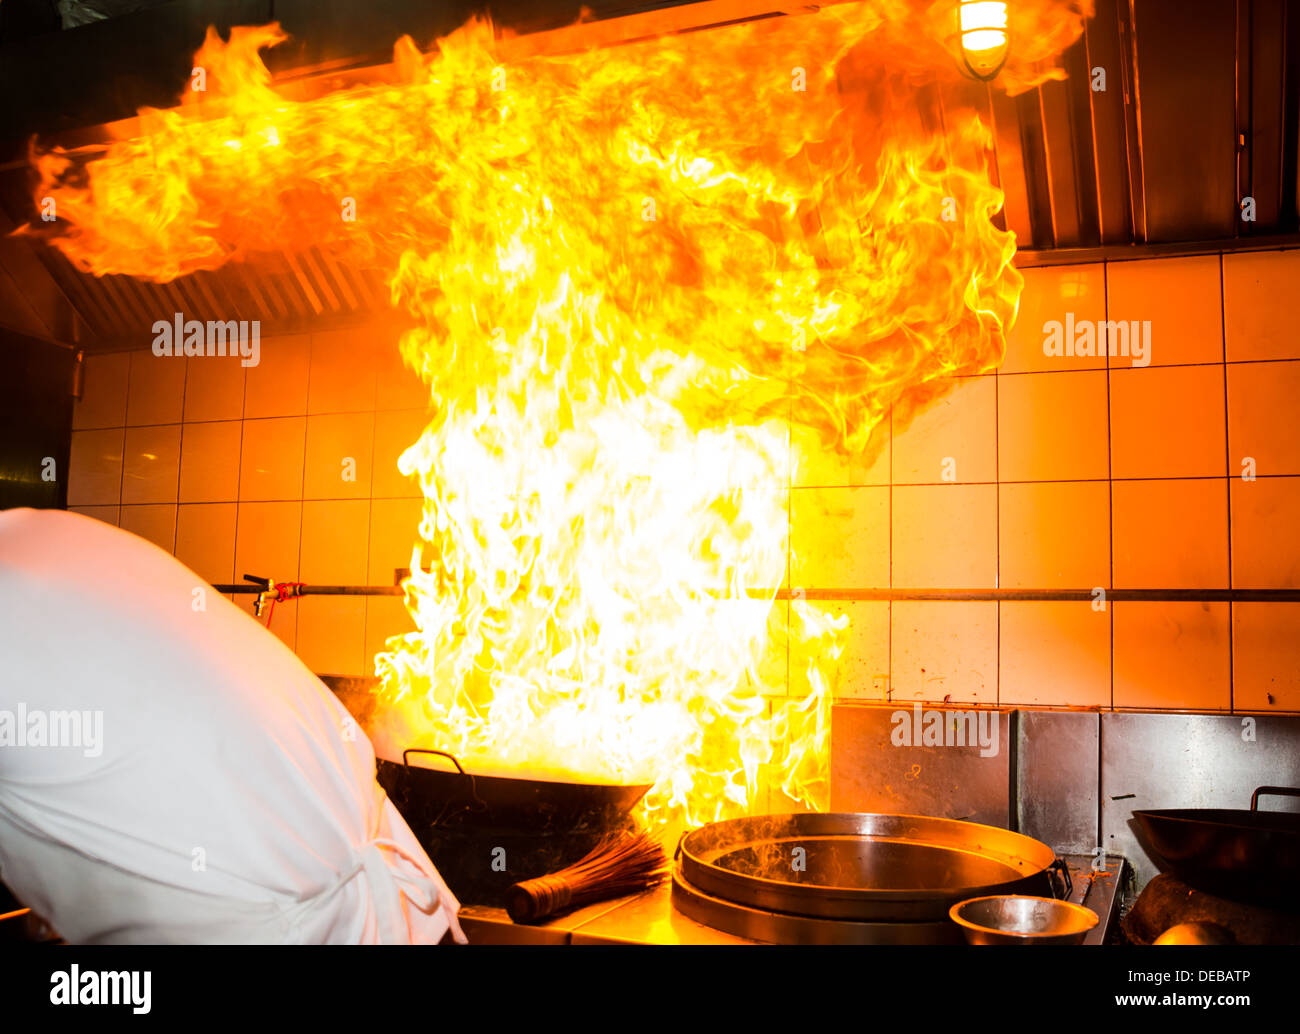 Feuer Gas brennen ist auf eisernen Pfanne rühren Feuer sehr heiß kochen  Stockfotografie - Alamy